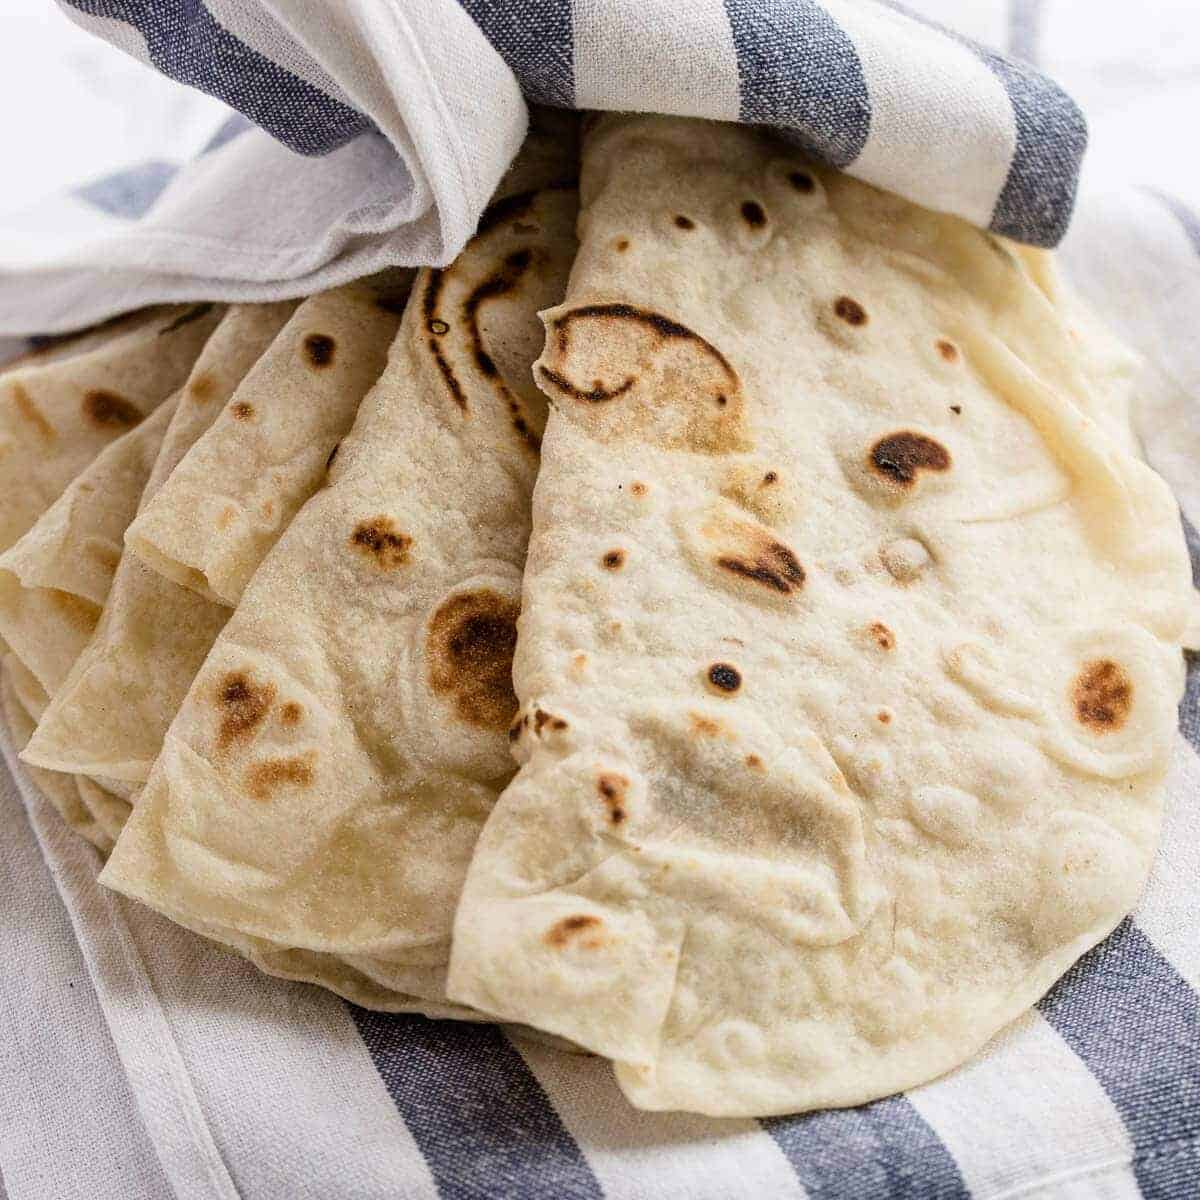 https://www.pantsdownapronson.com/wp-content/uploads/homemade-soft-flour-tortilla-recipe-17.jpg